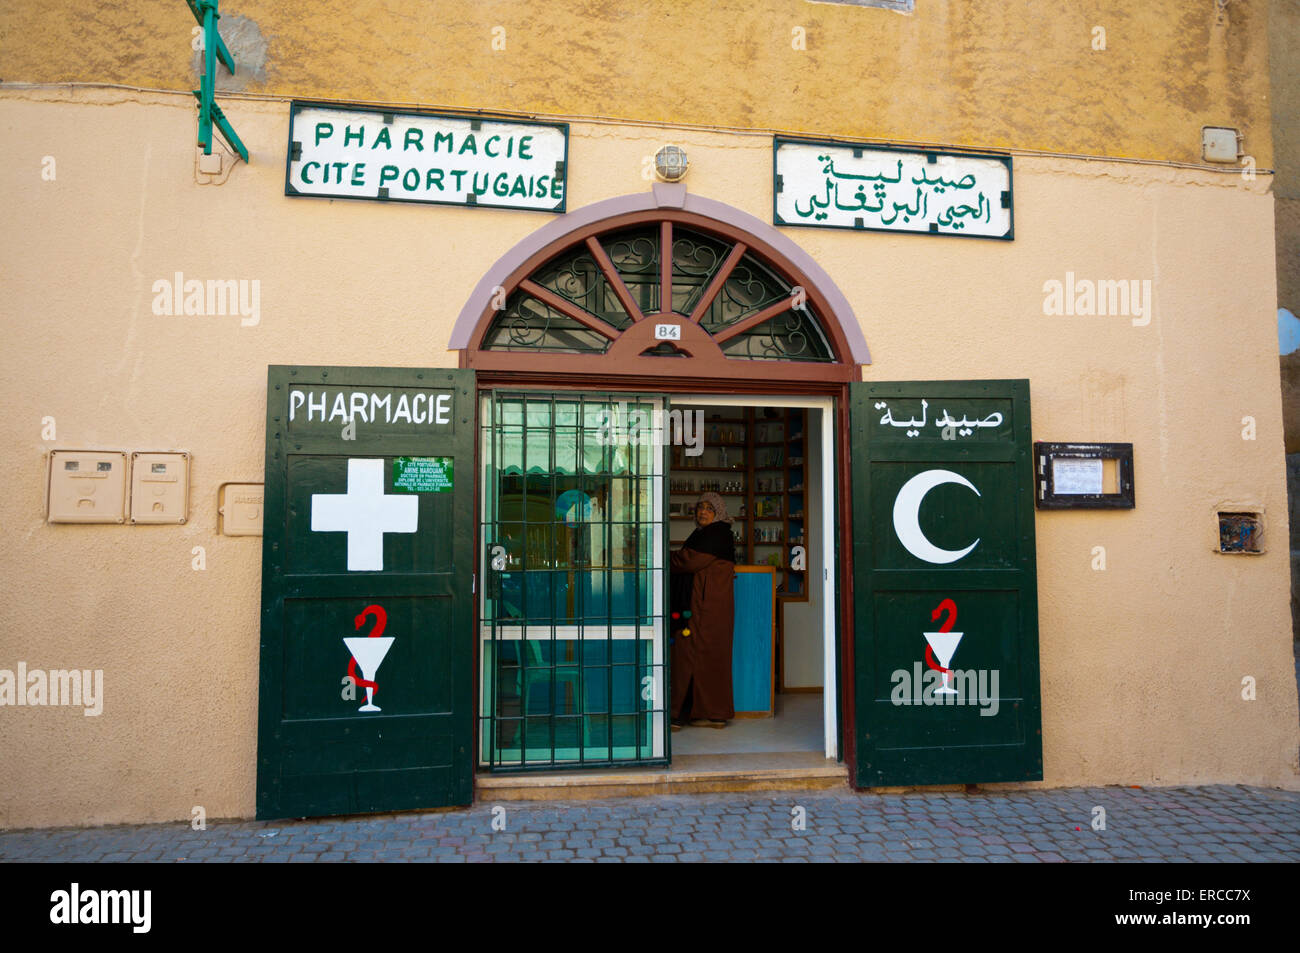 Pharmacie, cité portugaise, Portugais vieille ville, El Jadida, Maroc, Afrique du Nord Banque D'Images